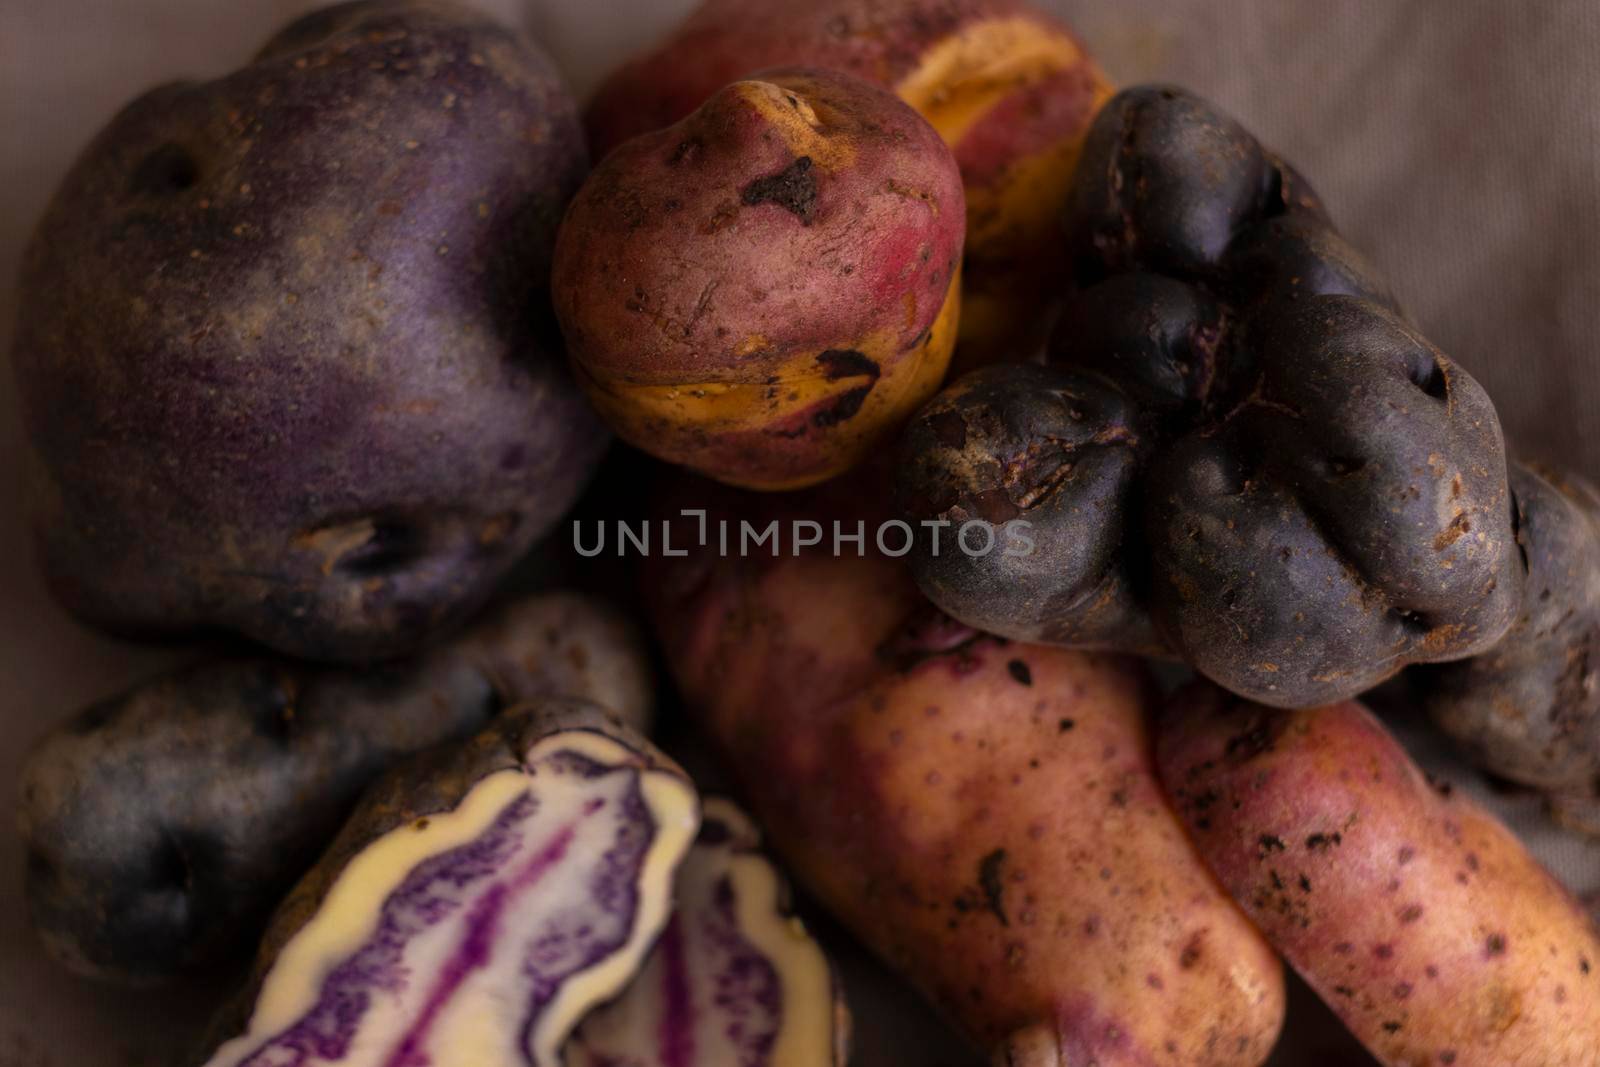 Peruvian native potatoes, harvested in Cusco, Peru by eagg13